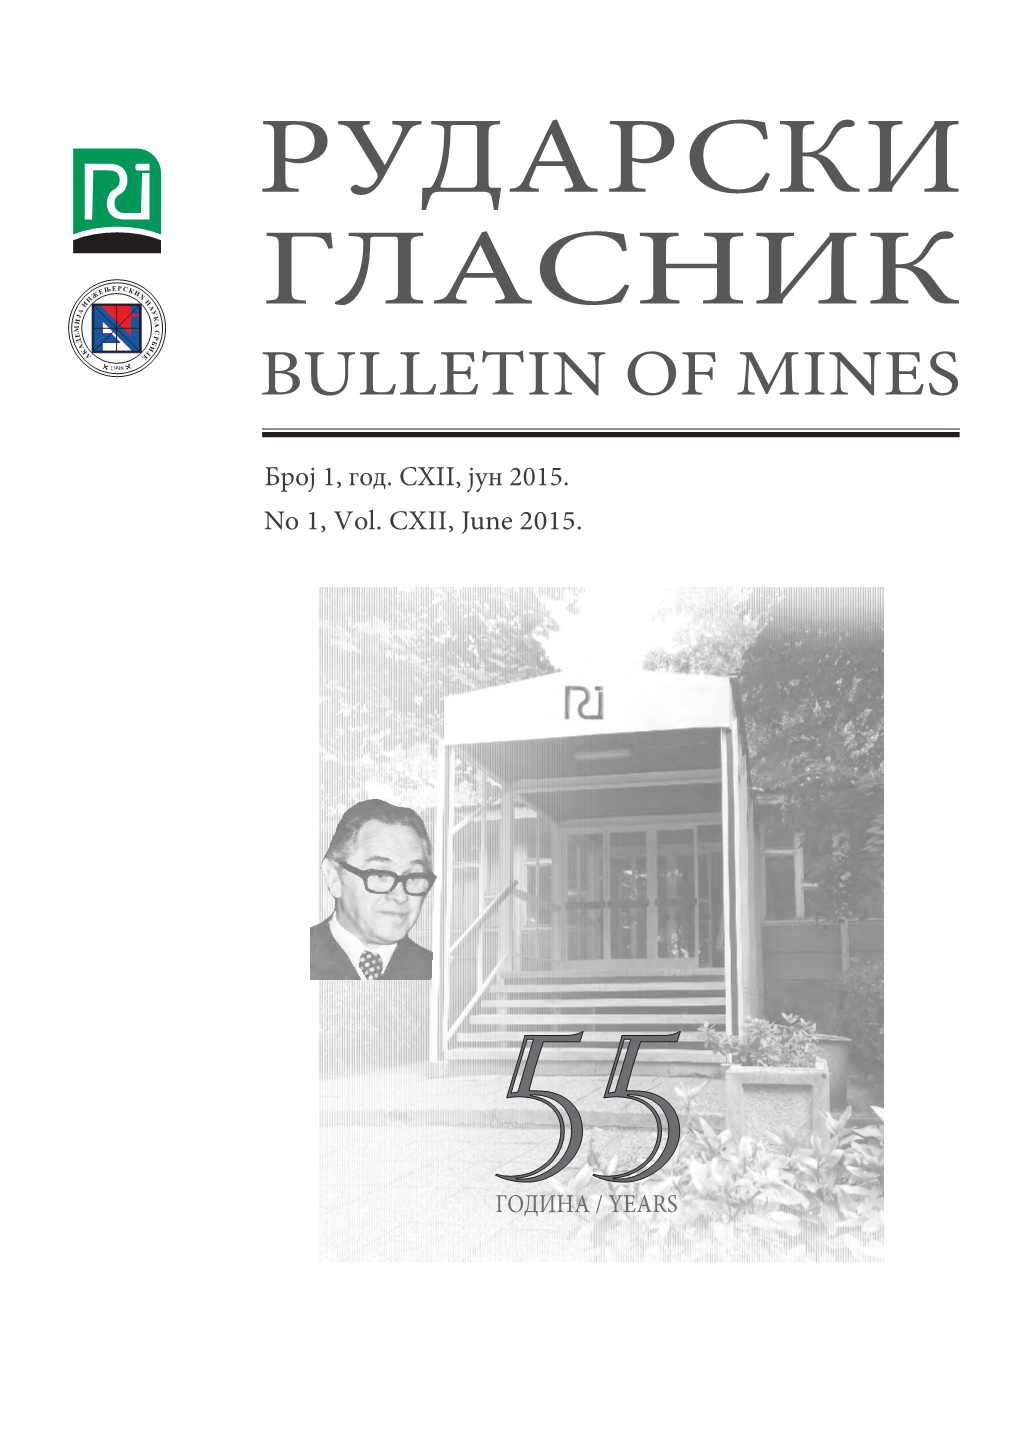 Рударски Гласник Bulletin of Mines